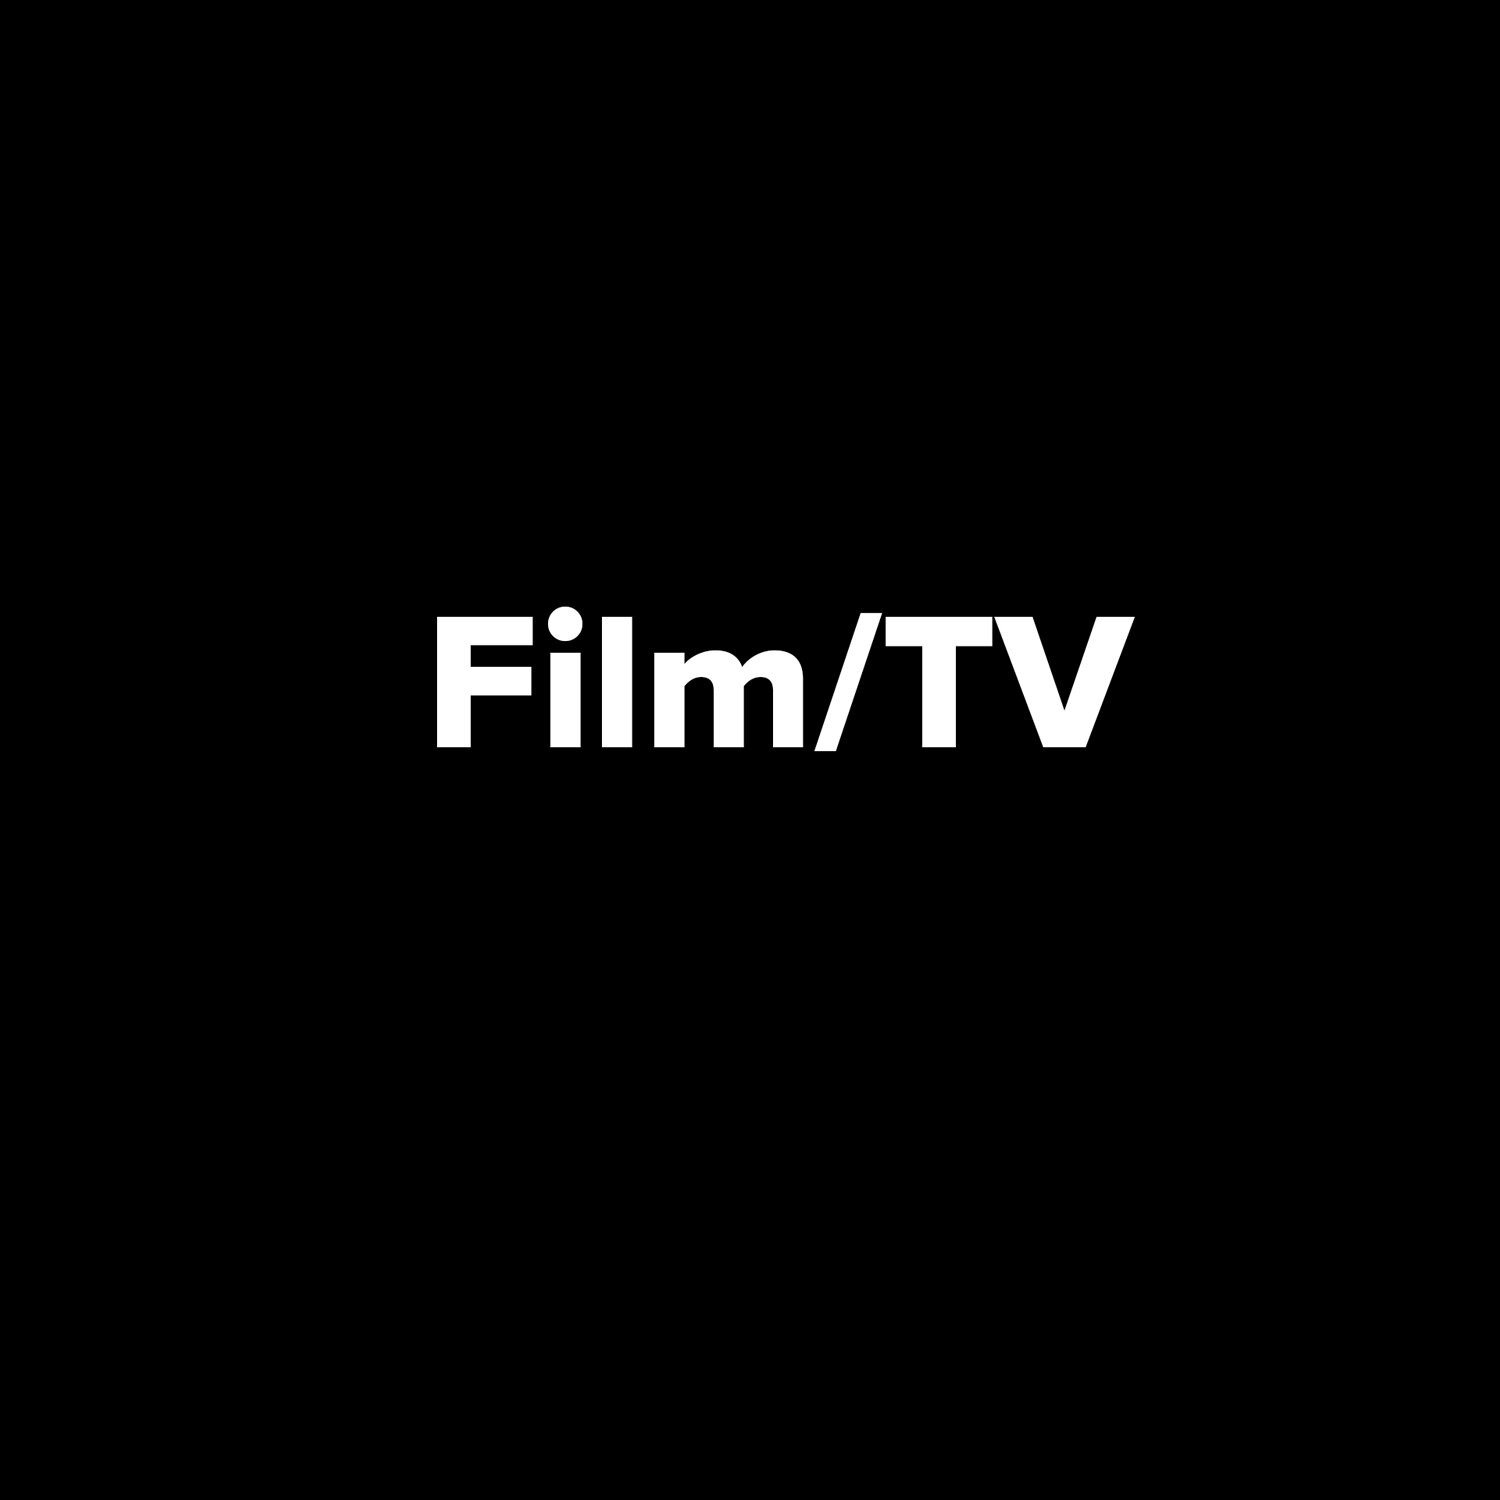 Film/TV